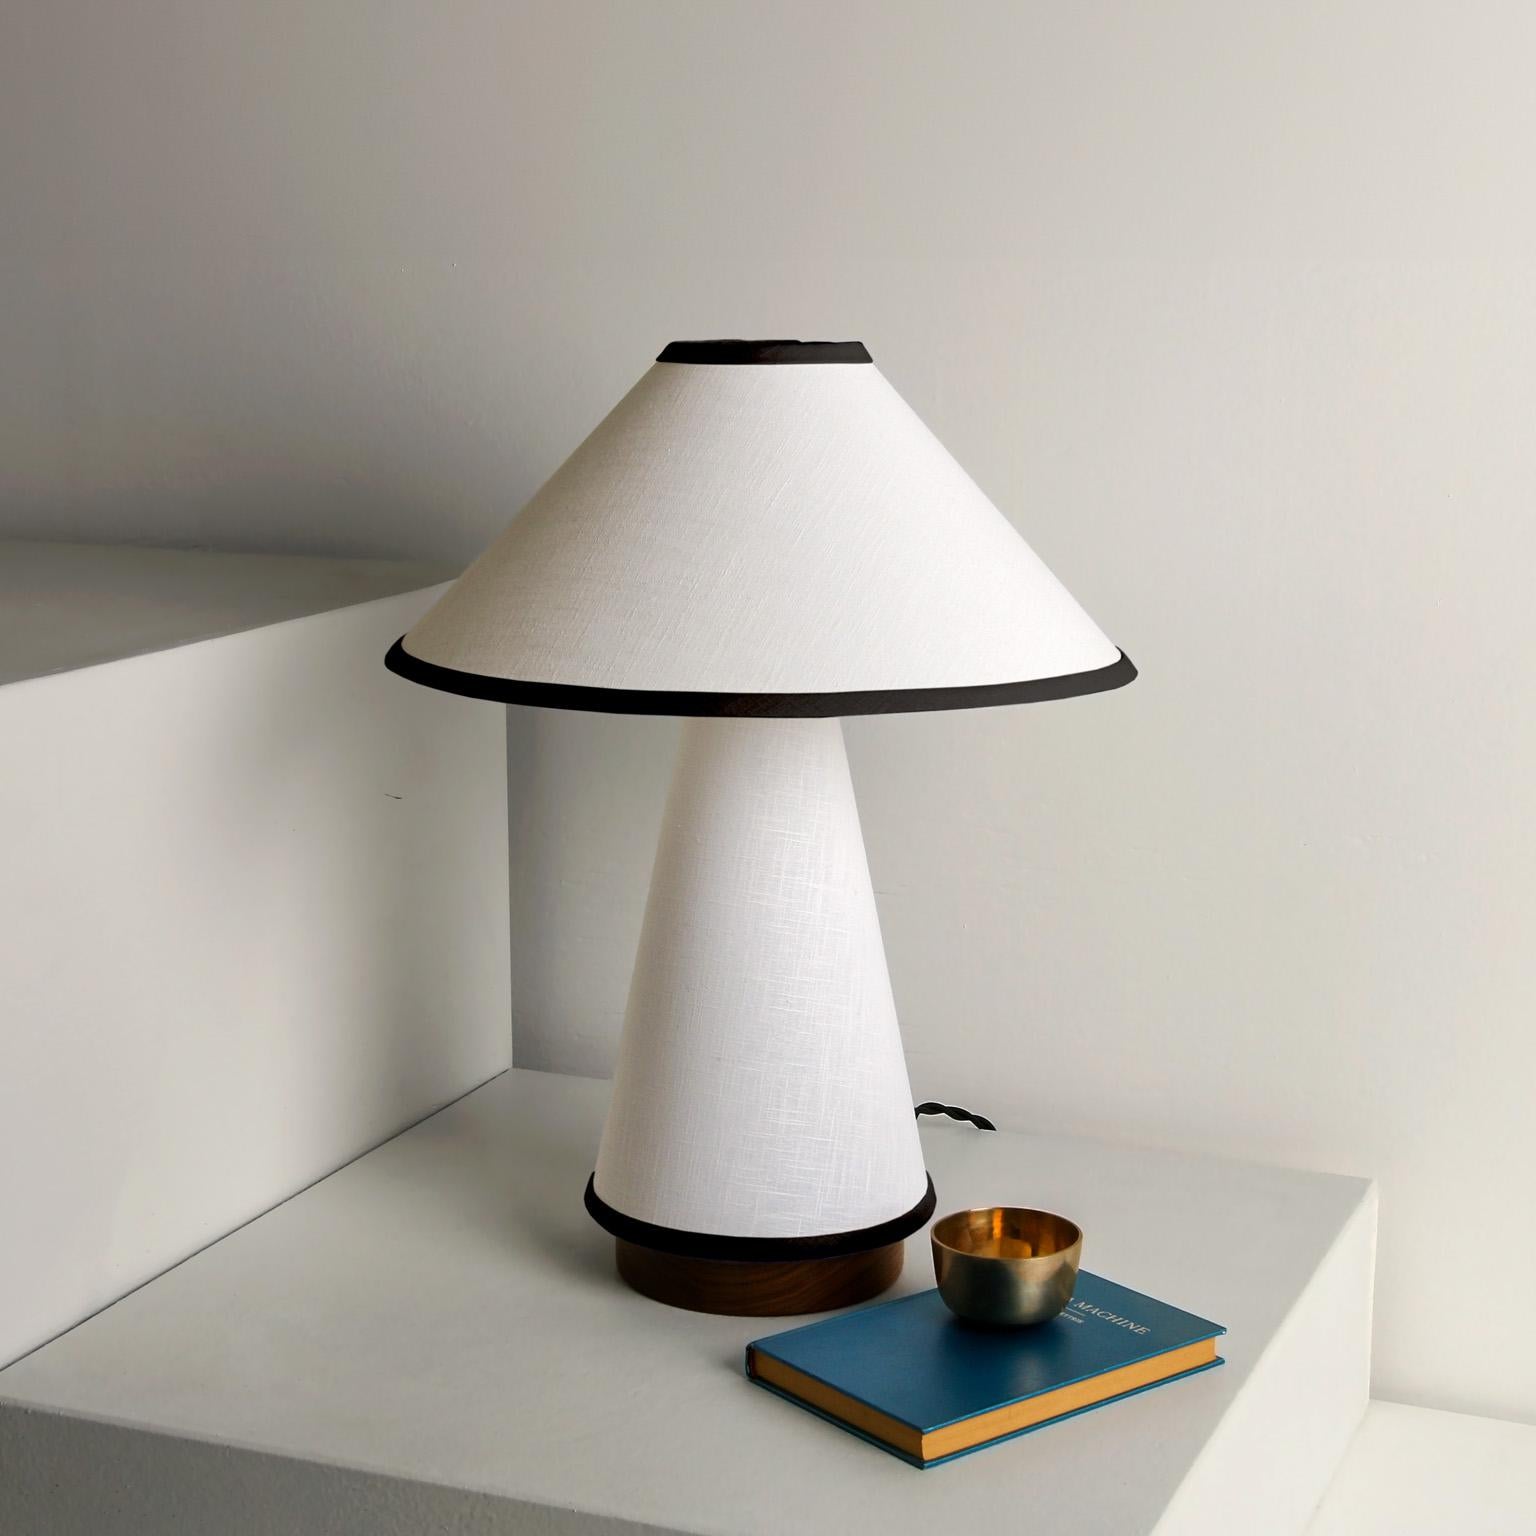 Notre lampe de table contemporaine Linden est maintenant disponible dans une hauteur plus courte de 20,5 pouces avec un abat-jour de 16 pouces de diamètre. Cette lampe minimaliste est dotée d'un tissu en lin, d'une base en bois dur et de détails en